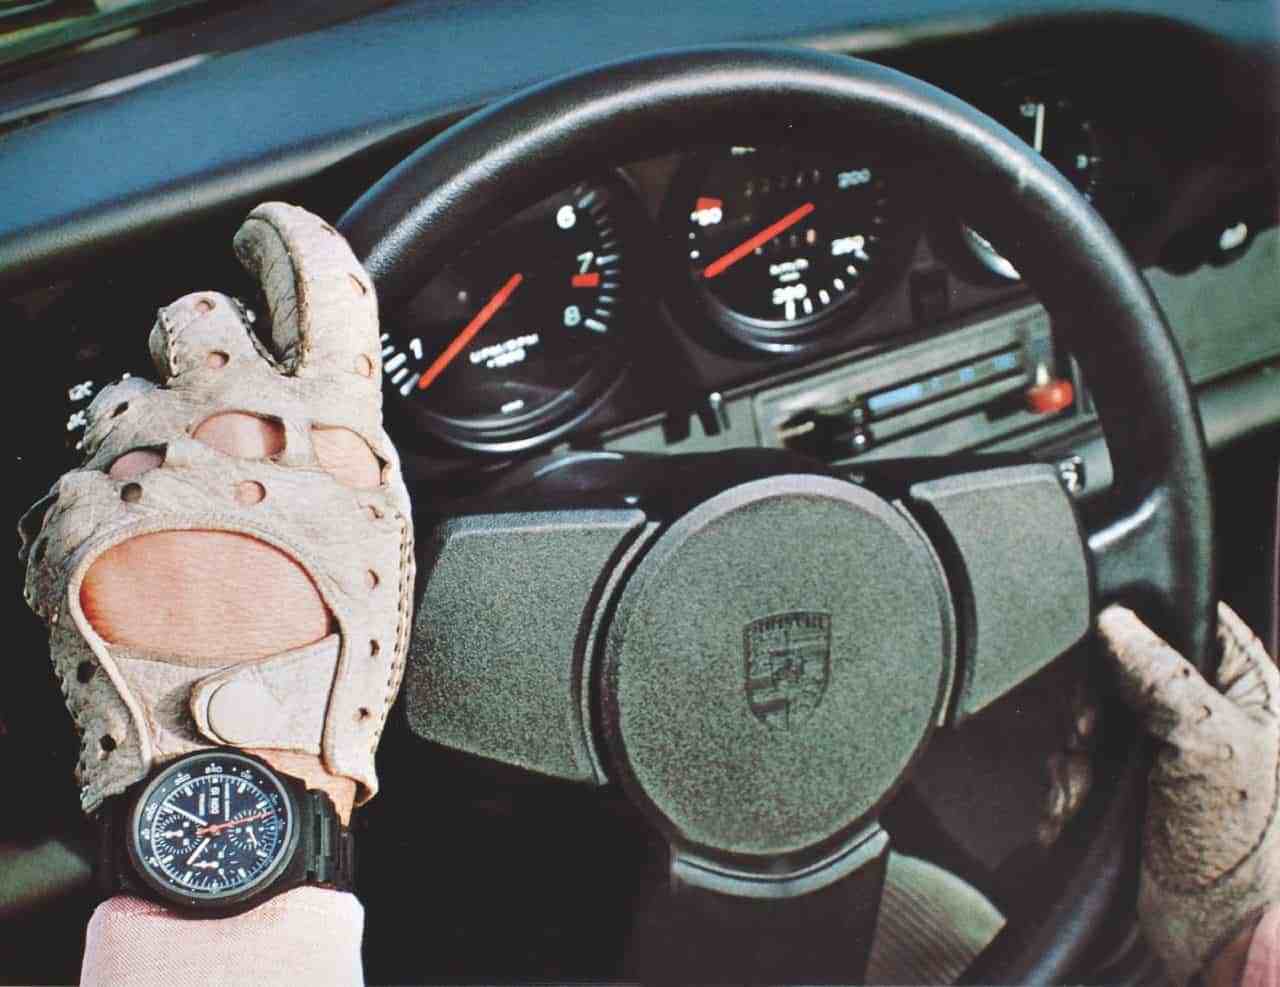 Đồng hồ Porsche Design Black Chronograph ra mắt đầu tiên năm 1974